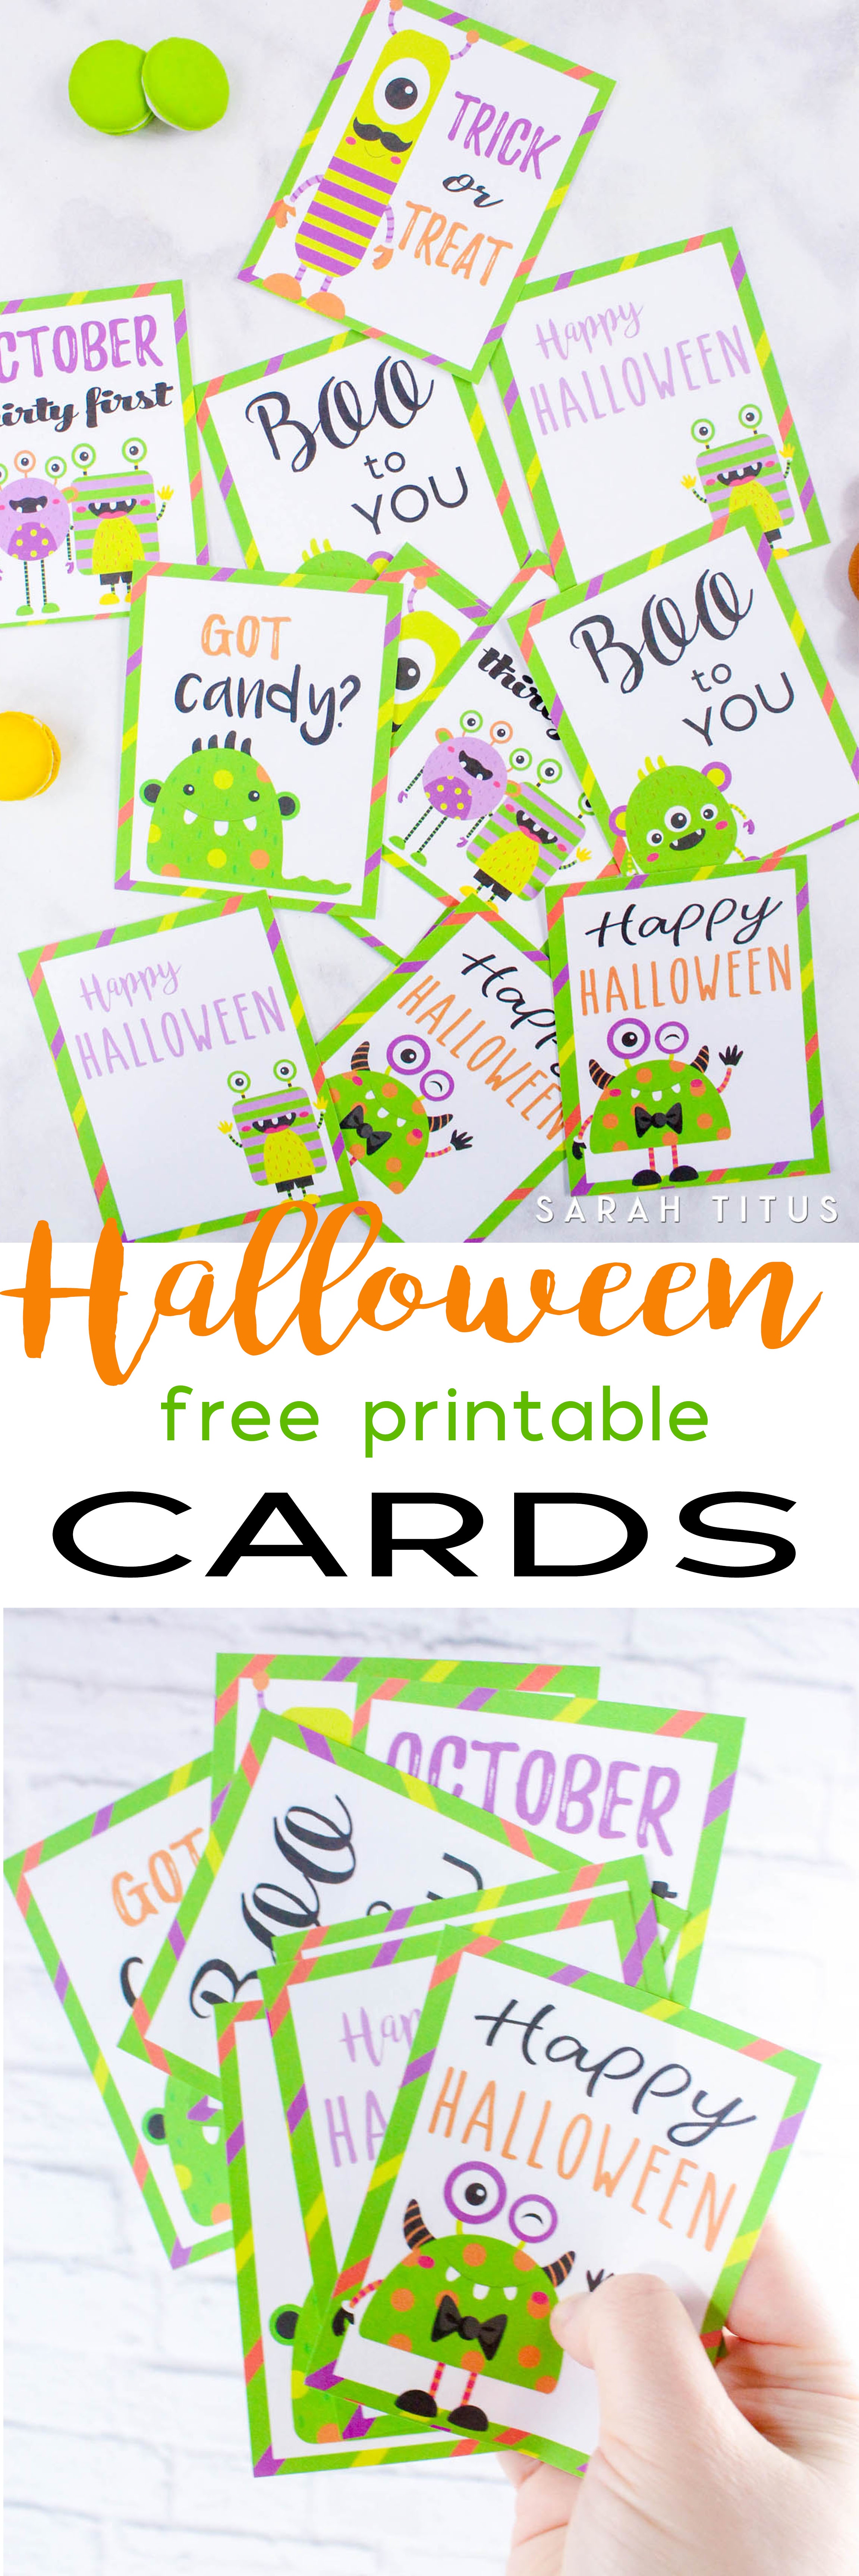 Halloween Free Printable Cards - Sarah Titus - Free Printable Halloween Cards